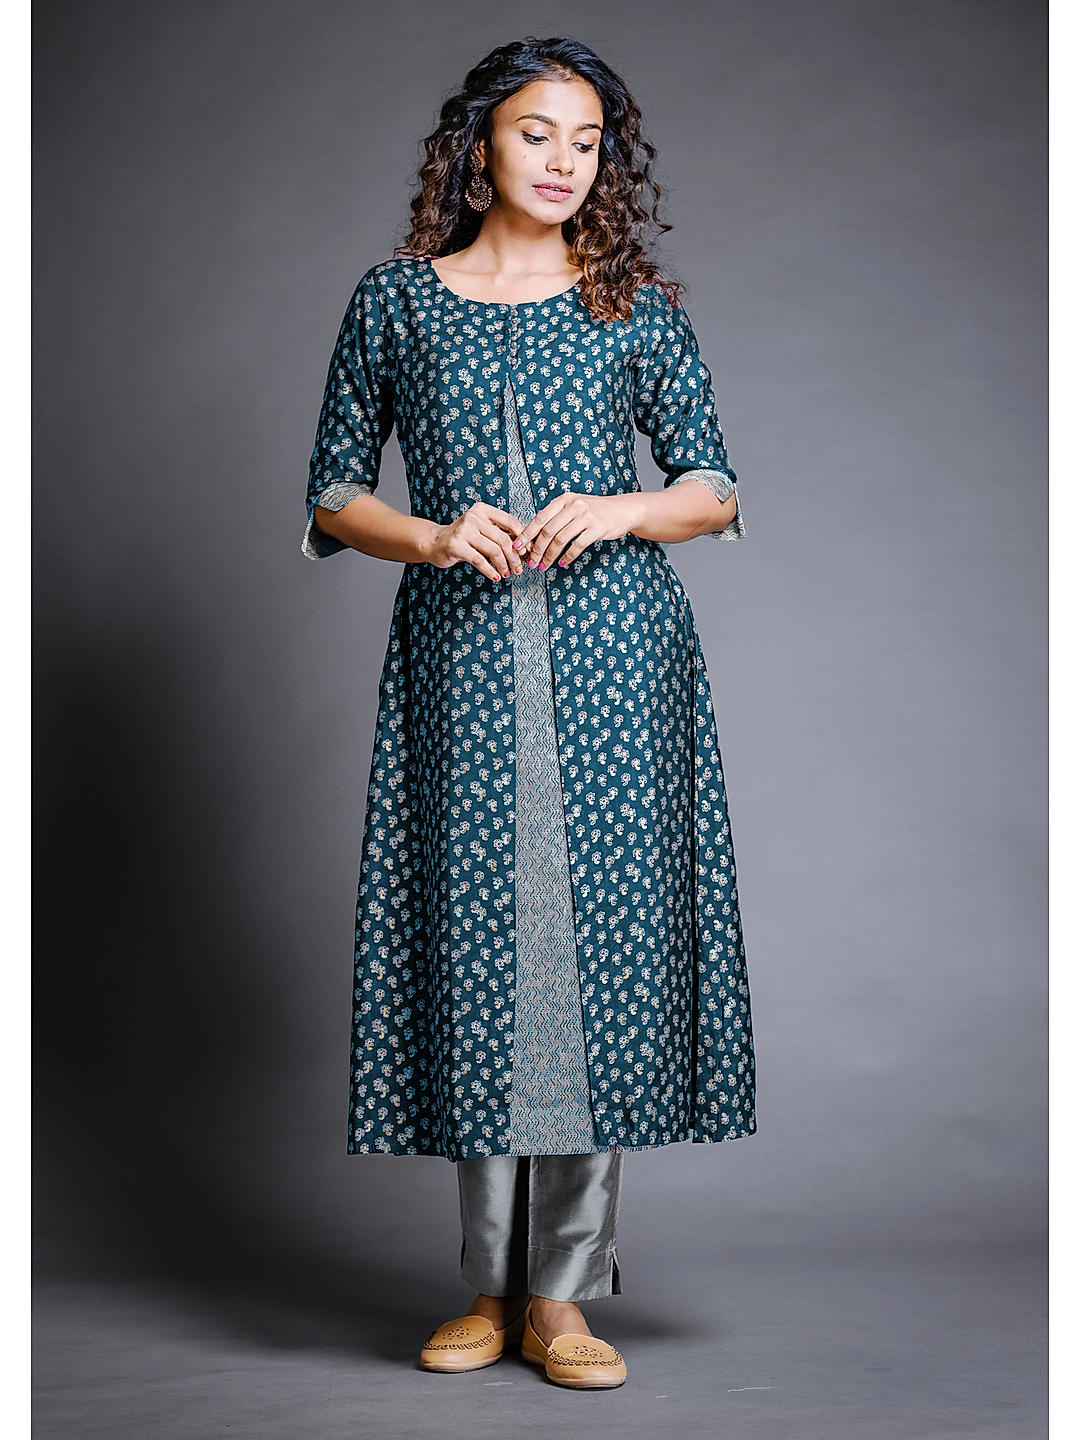 MAYREE INDIA SHARMILEE REYON DESIGNER FANCY KURTIS - textiledeal.in